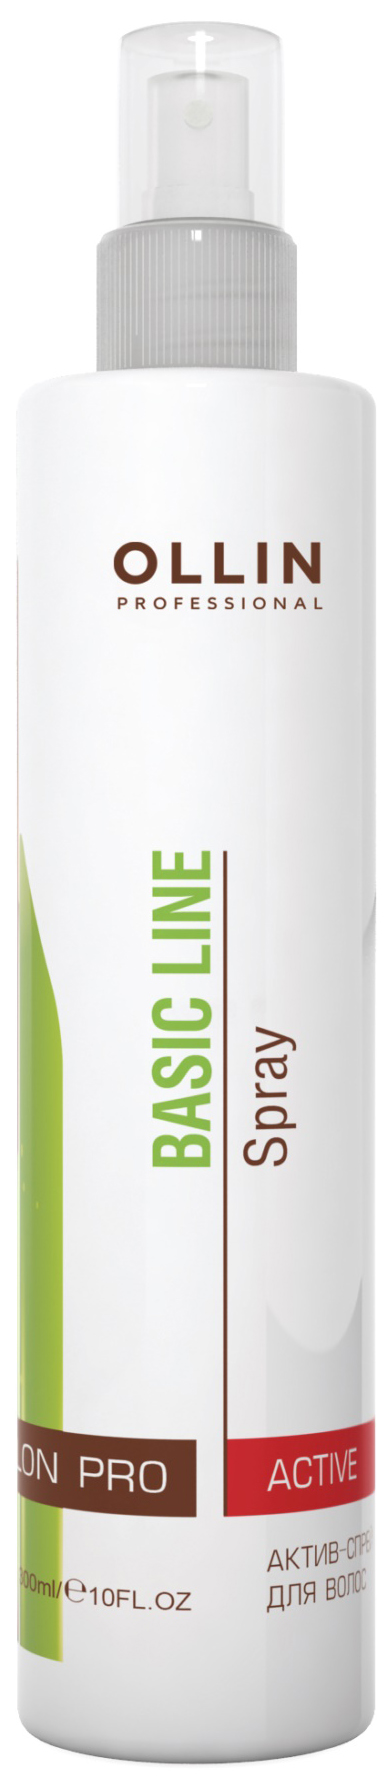 Купить Спрей для волос Ollin Professional Basic Line Hair Active Spray 250 мл